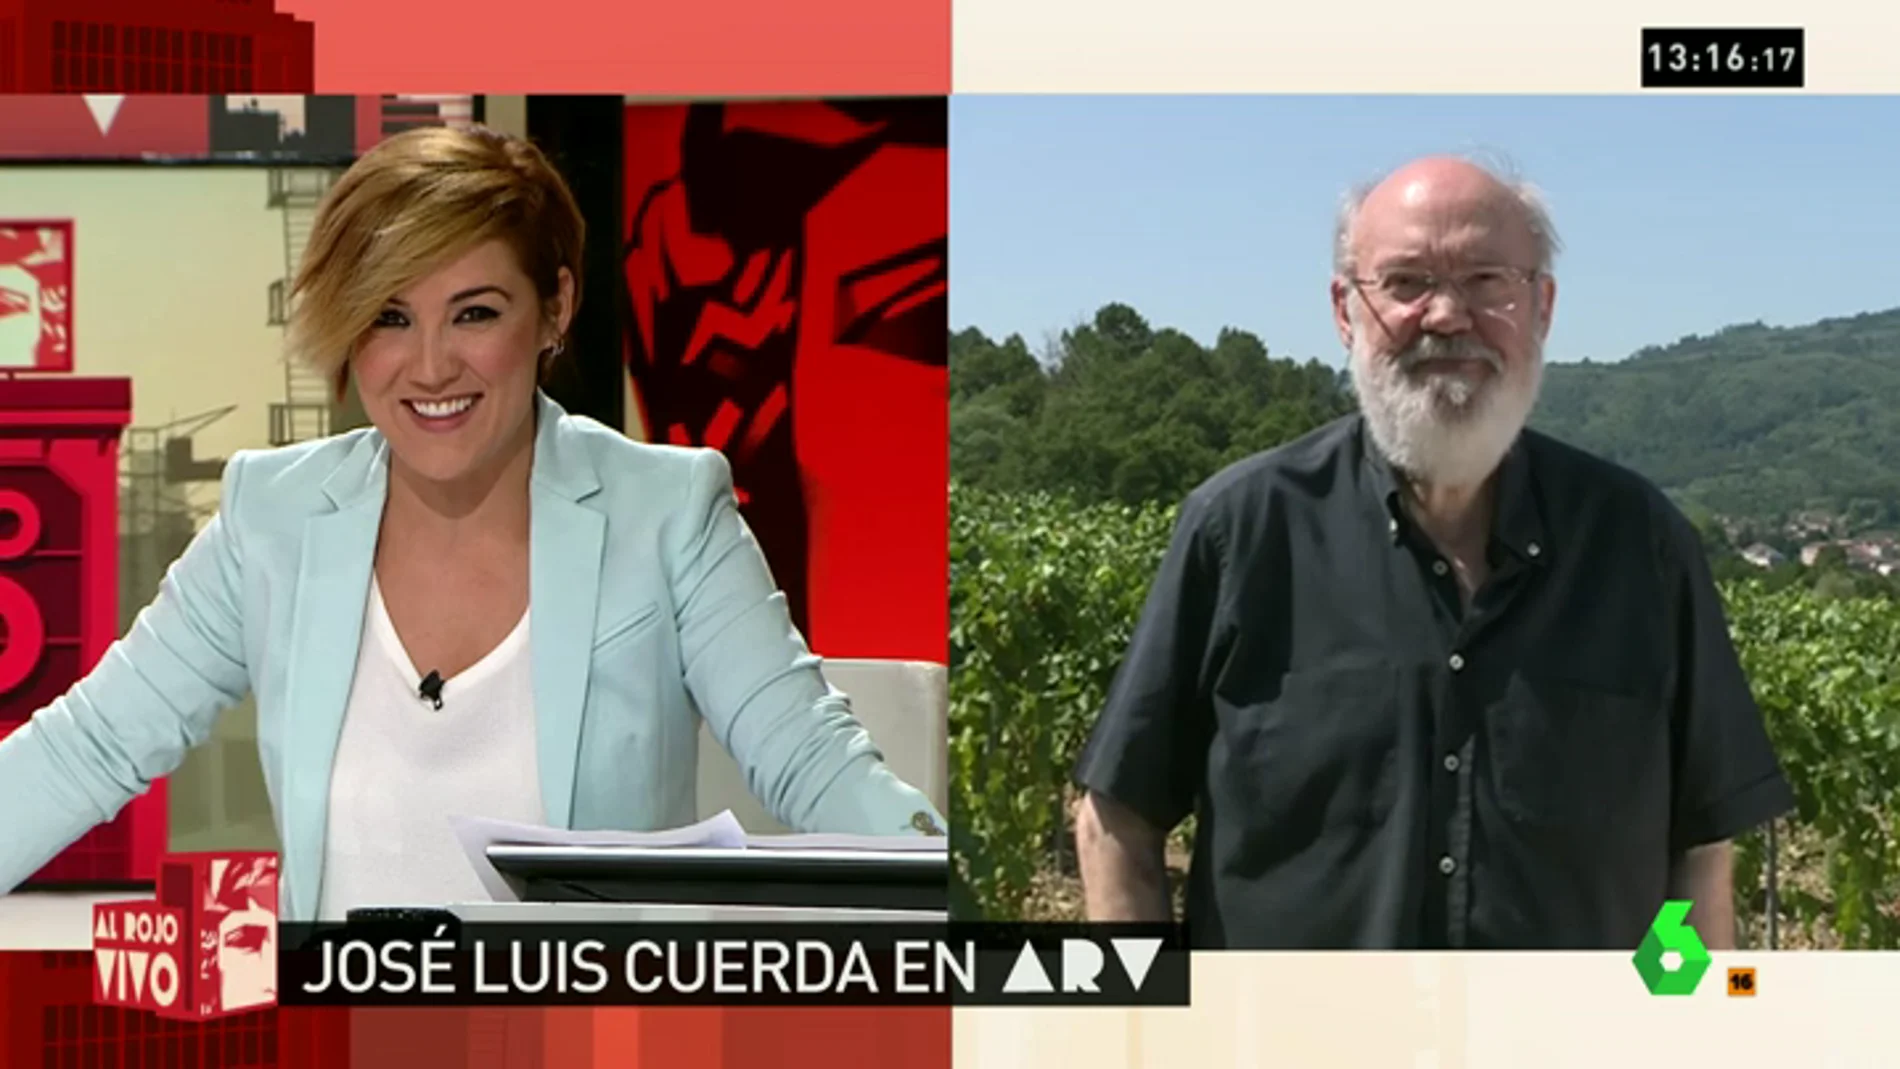 Frame 0.156996 de: José Luis Cuerda: "Rajoy no tiene vergüenza torera. No ha ganado nada"